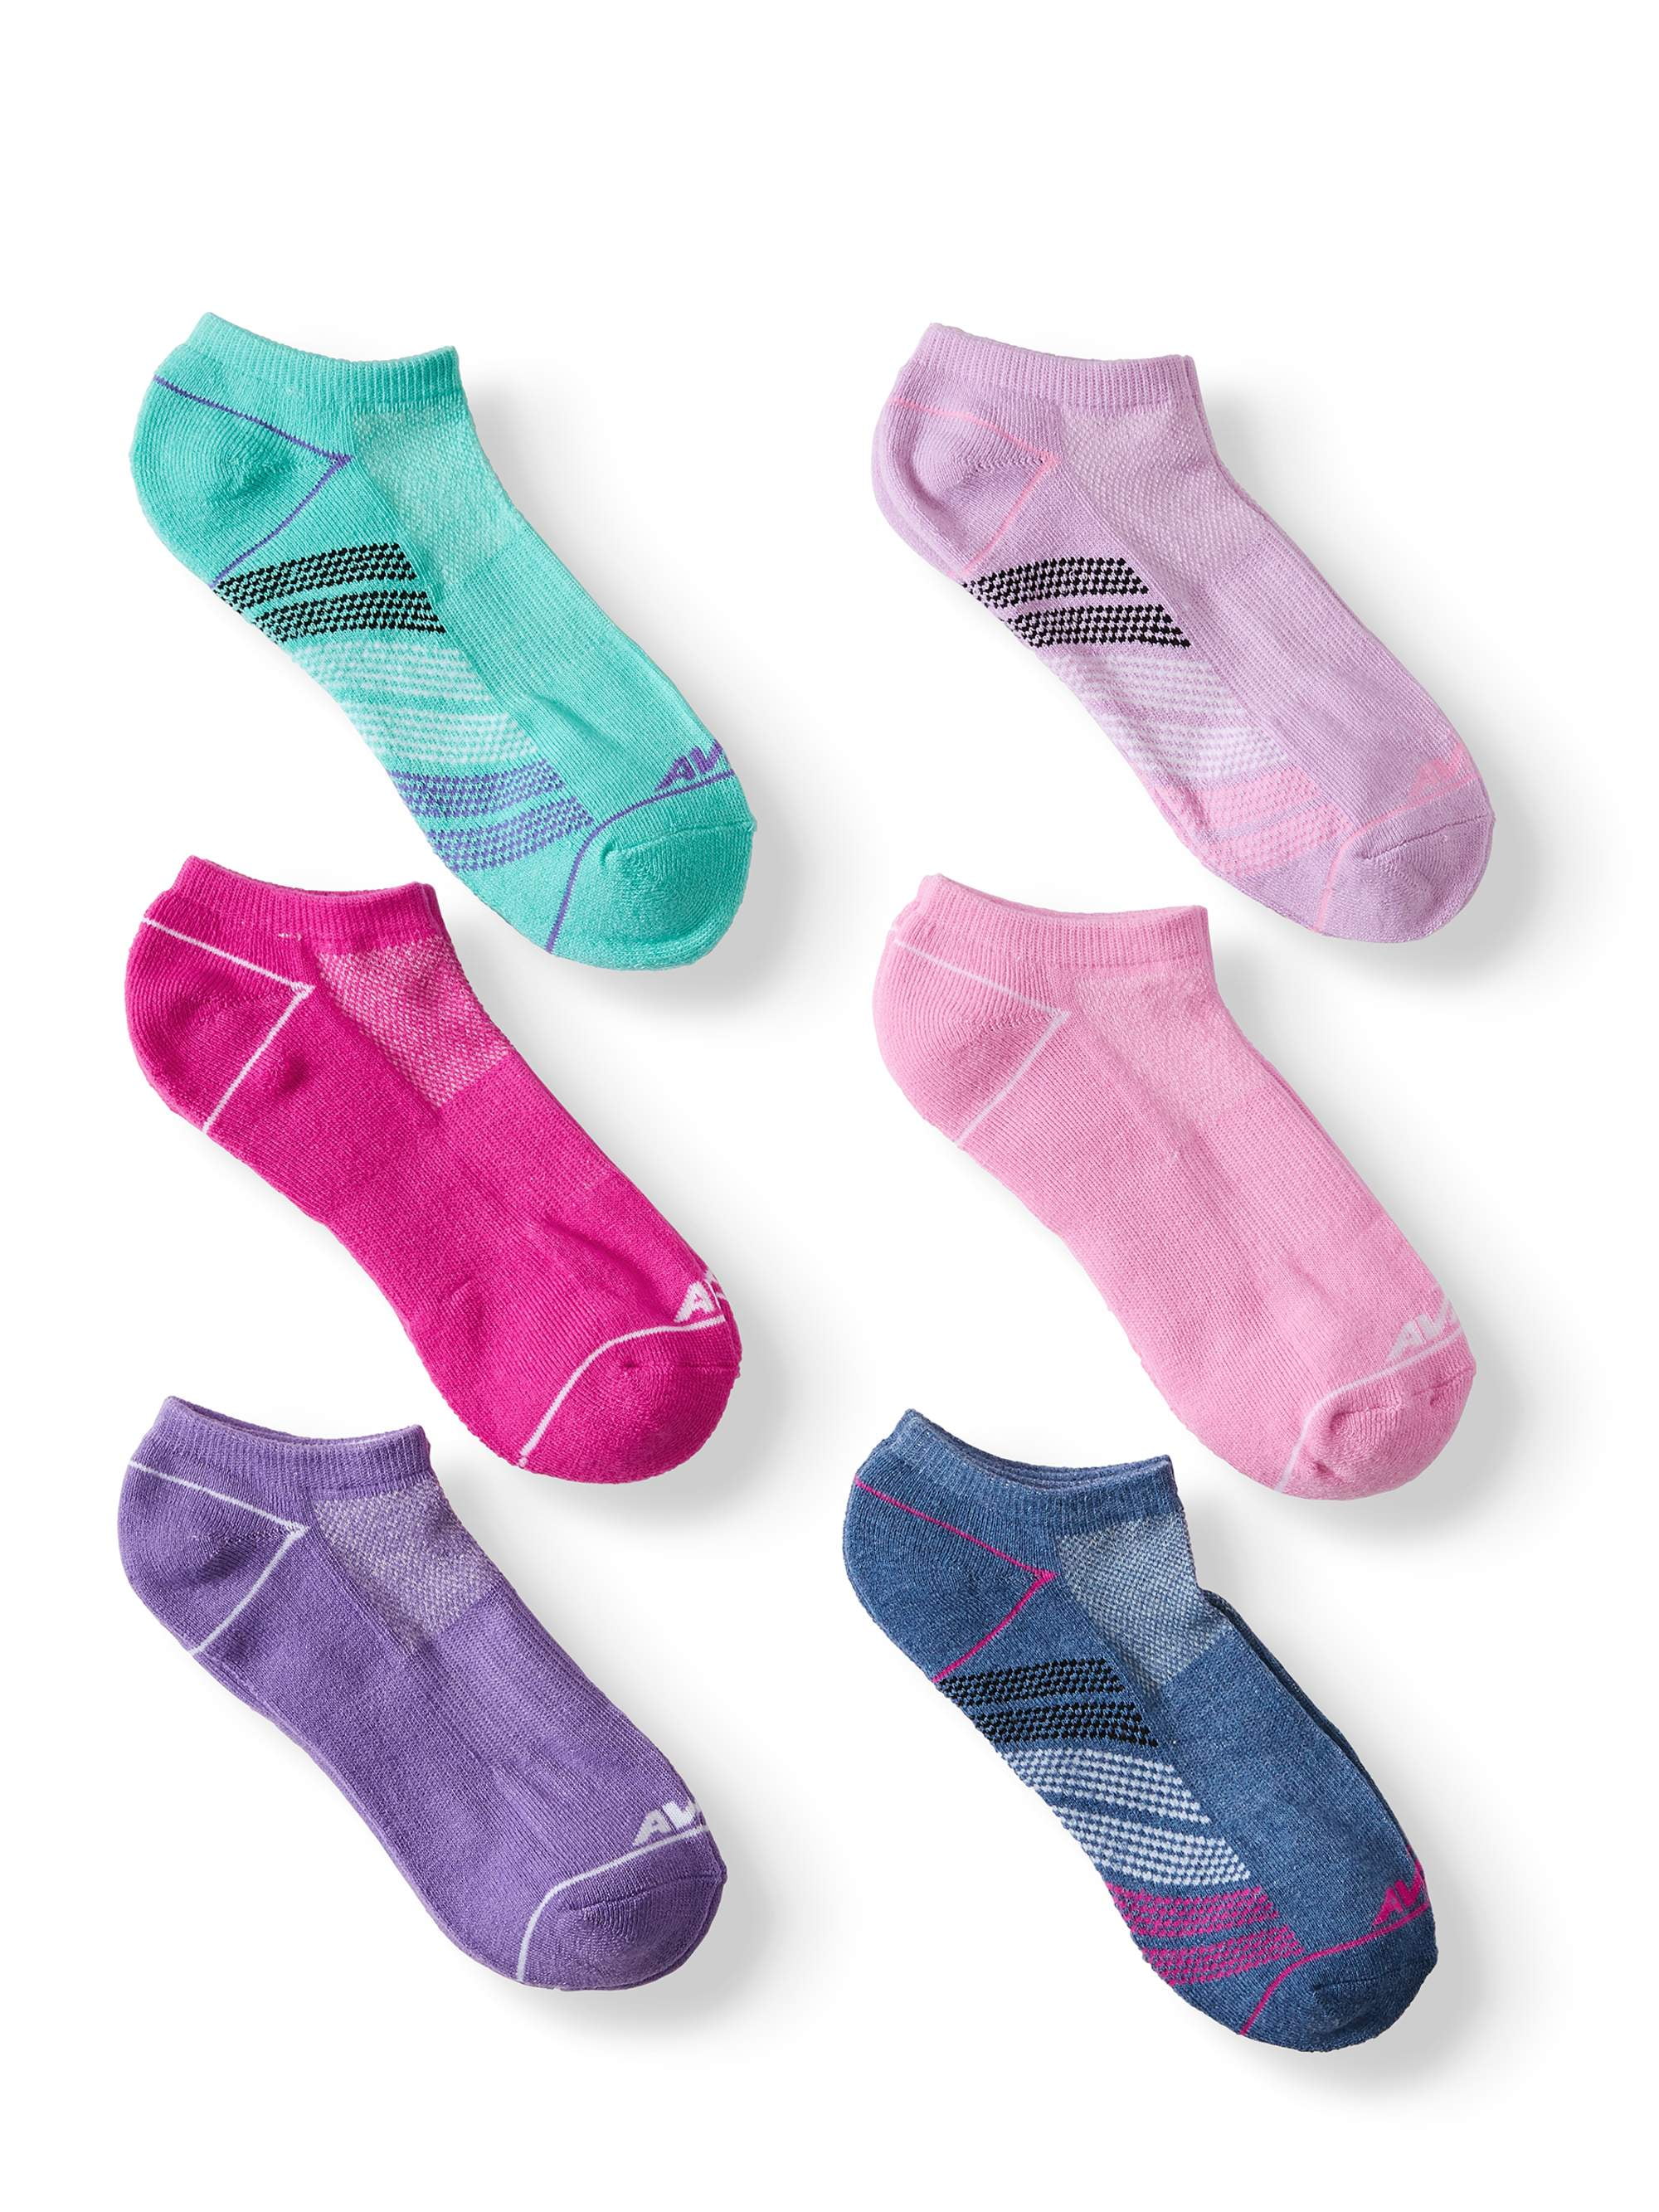 Avia Women's Pro Tech Socks, 6-Pack - Walmart.com